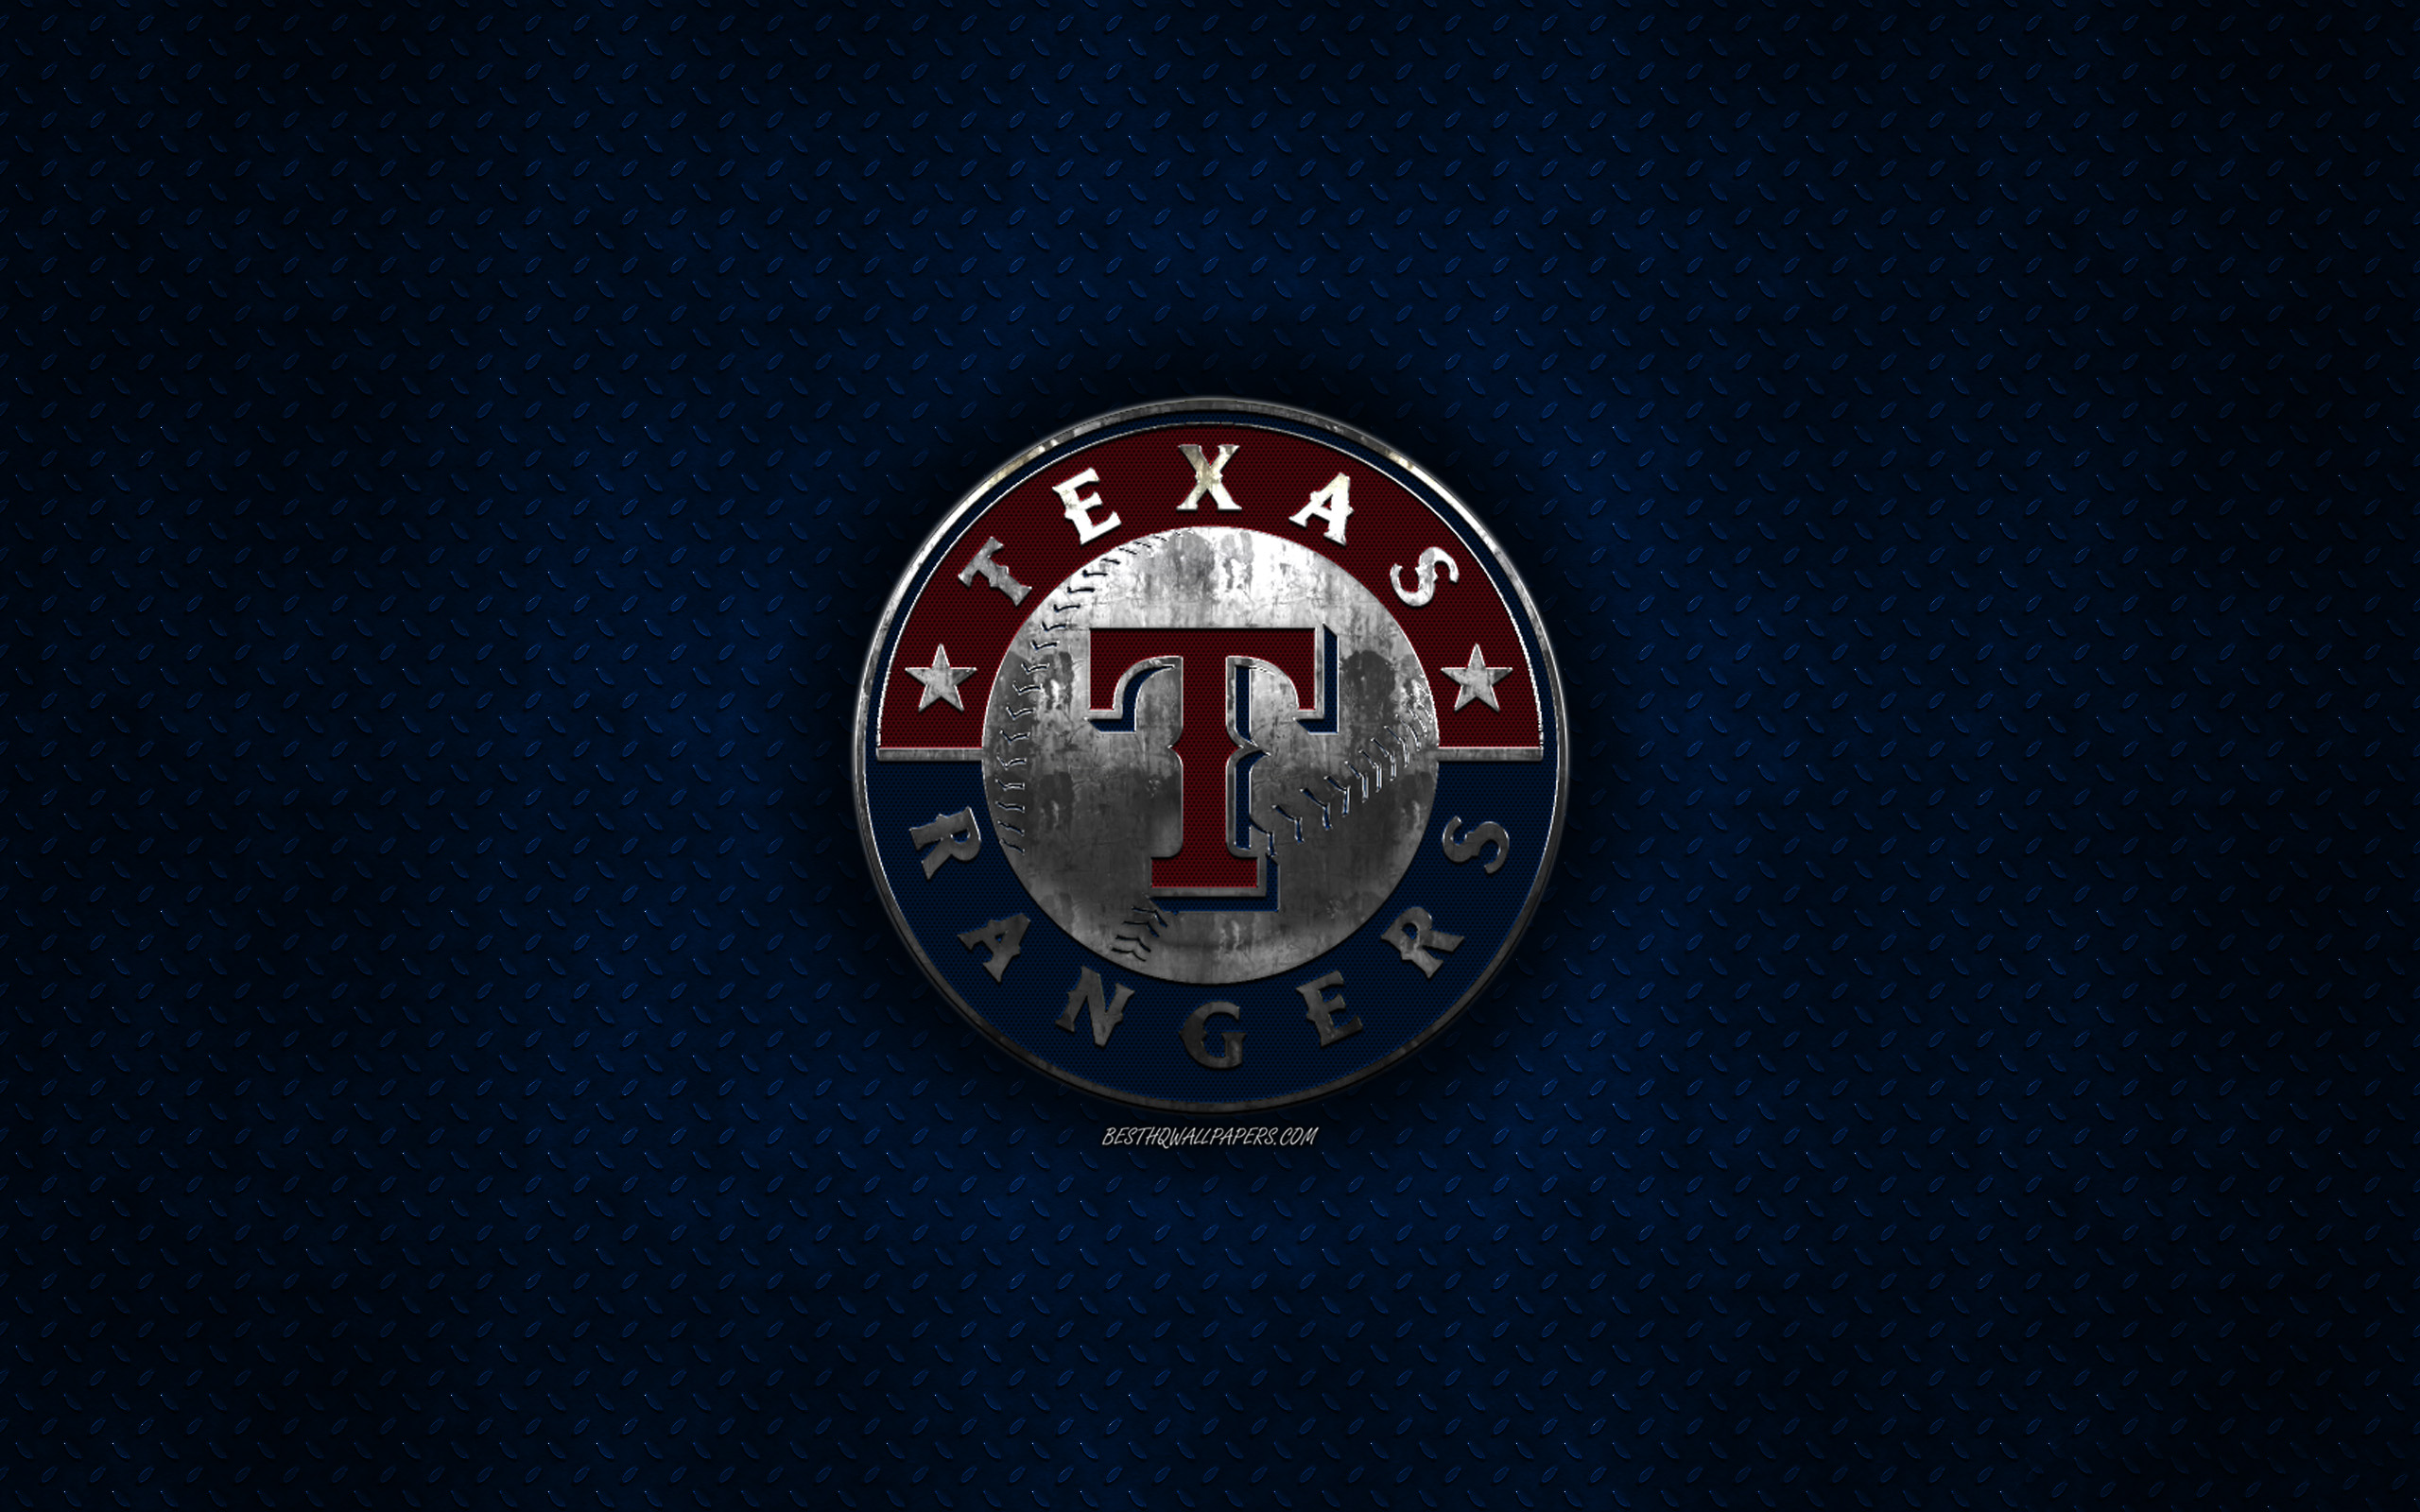 Download Texas Rangers Metallic Background Wallpaper